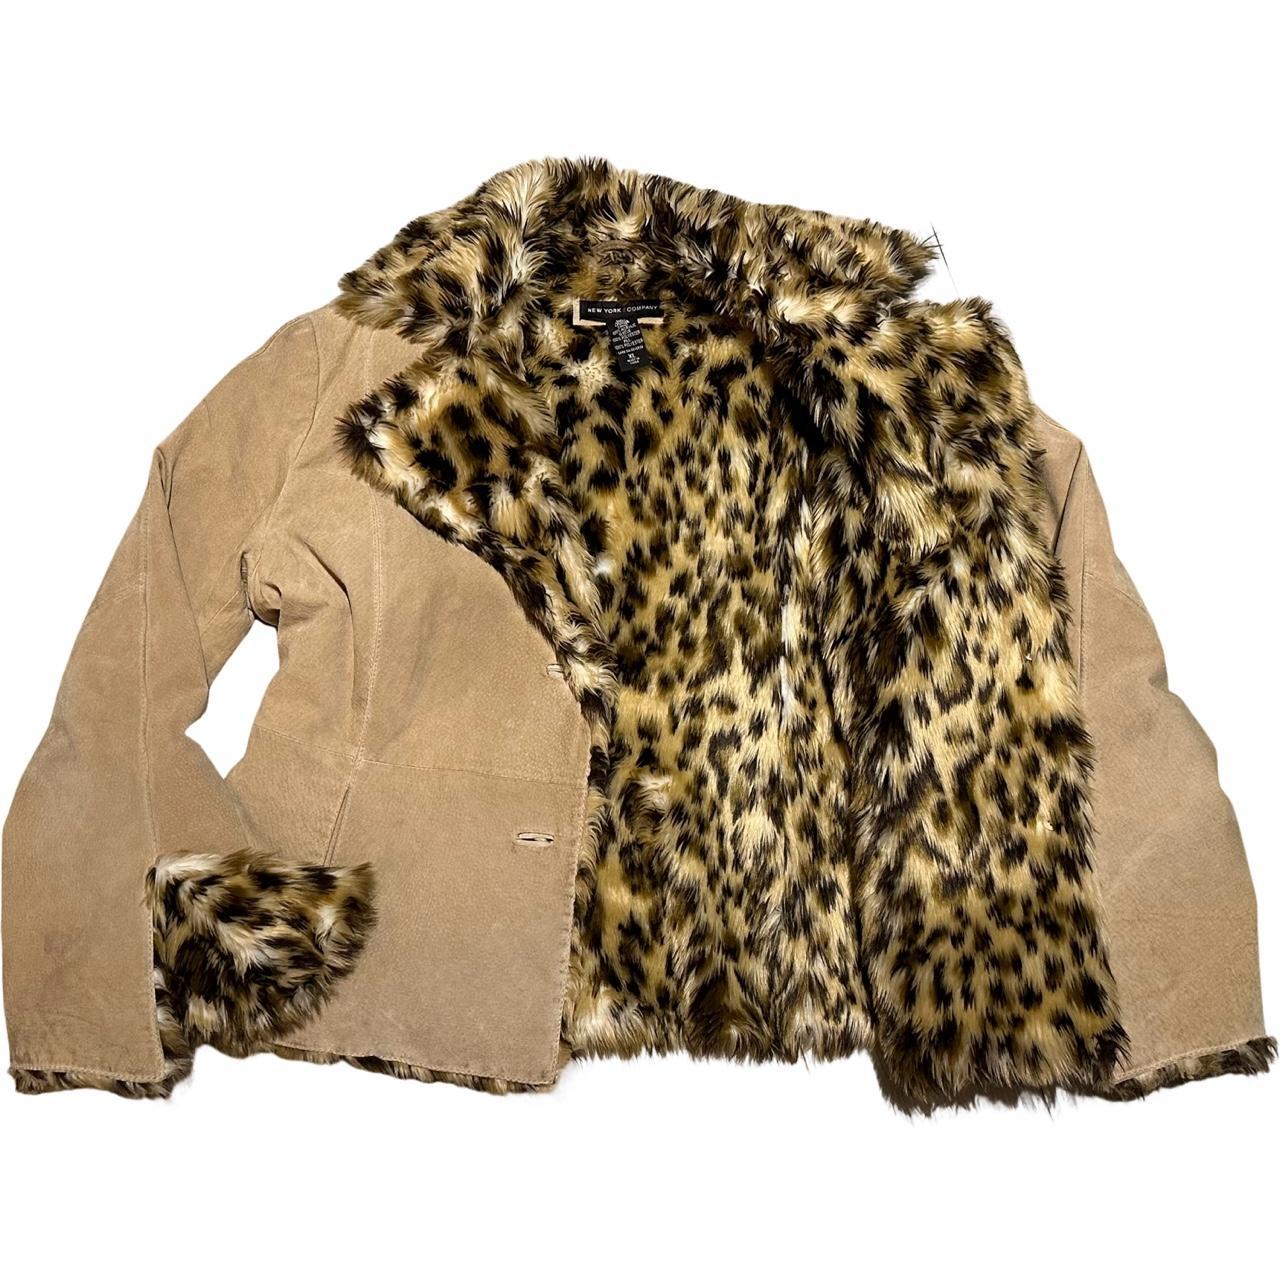 Cheetah Print Fur And Suede jacket